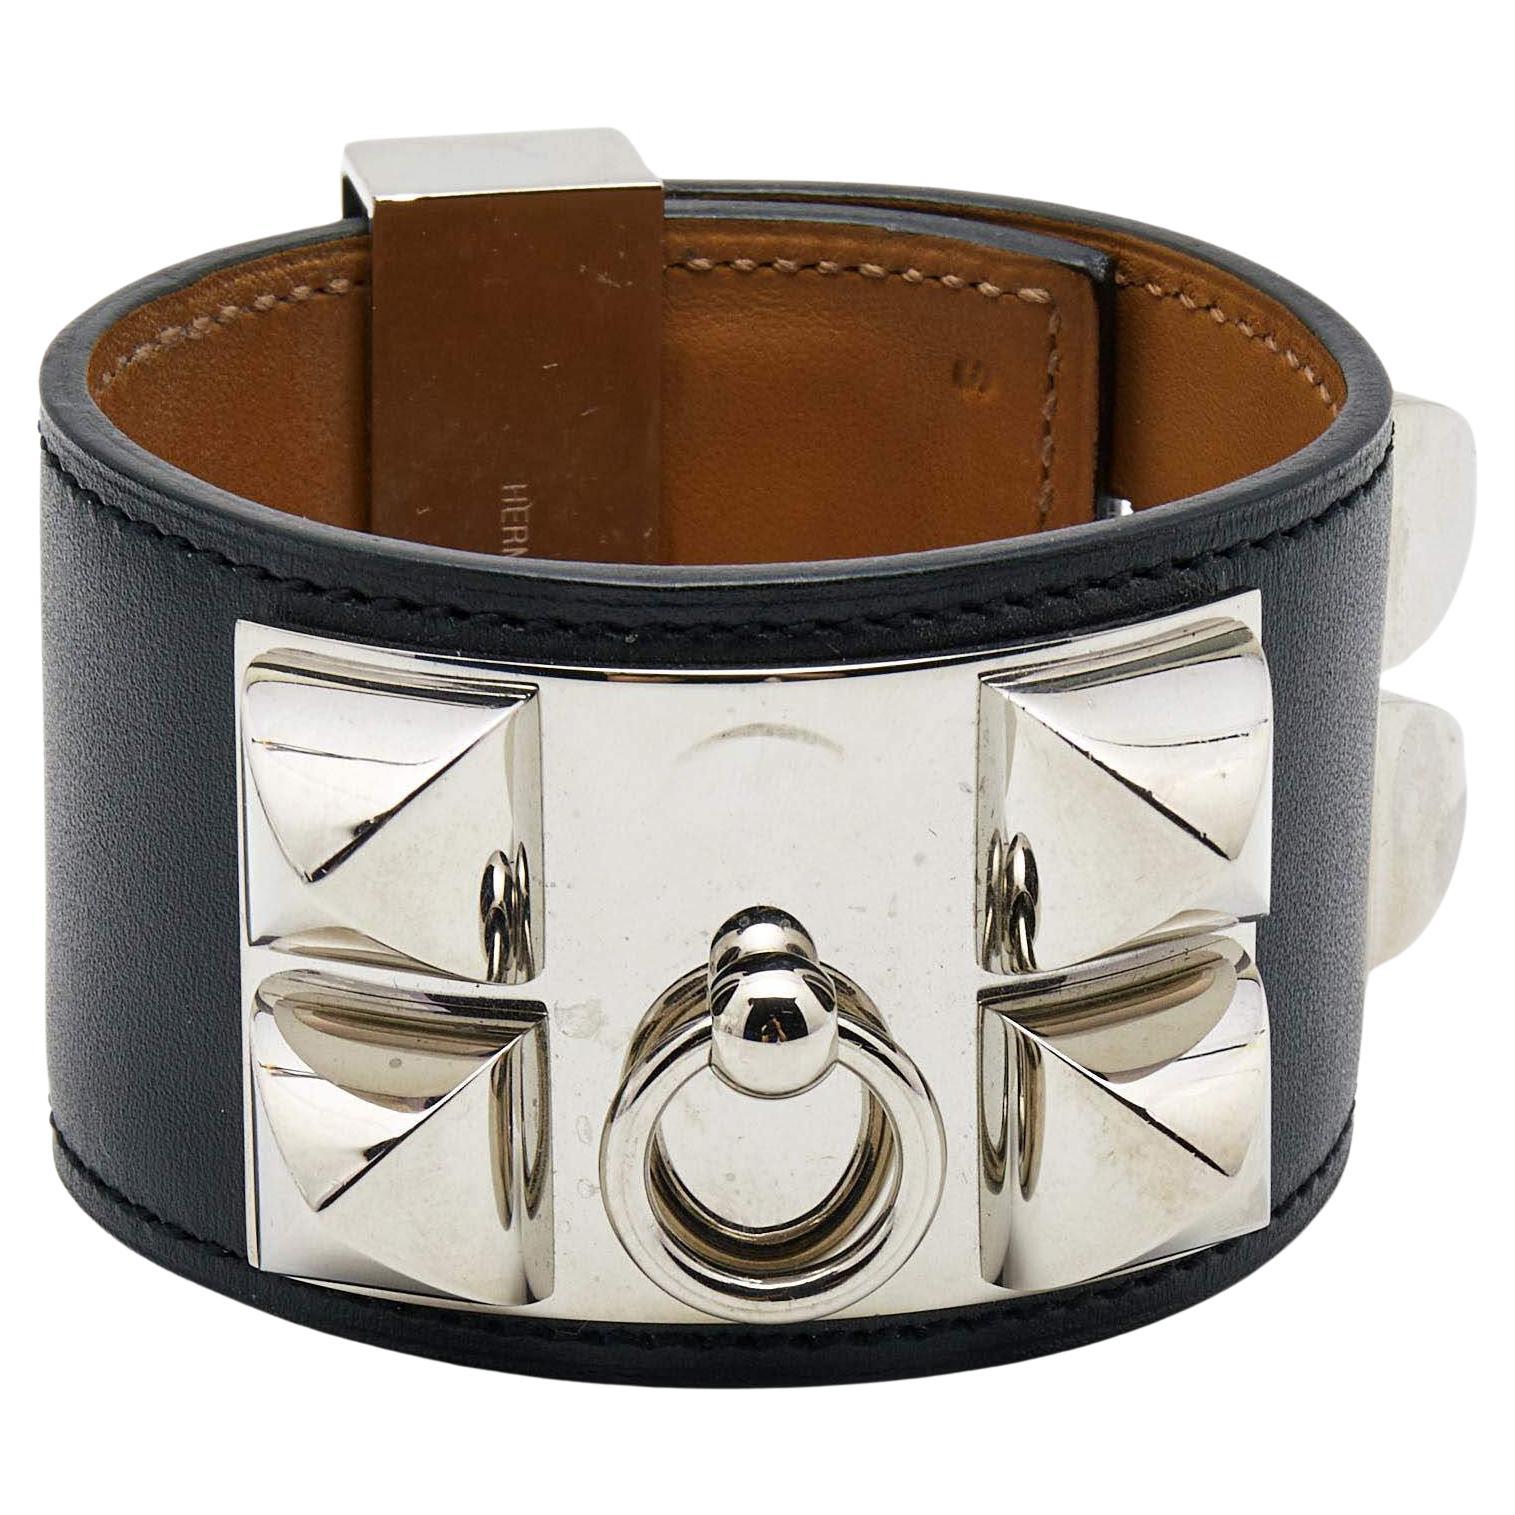 Hermes Collier De Chien Leather Palladium Plated Bracelet